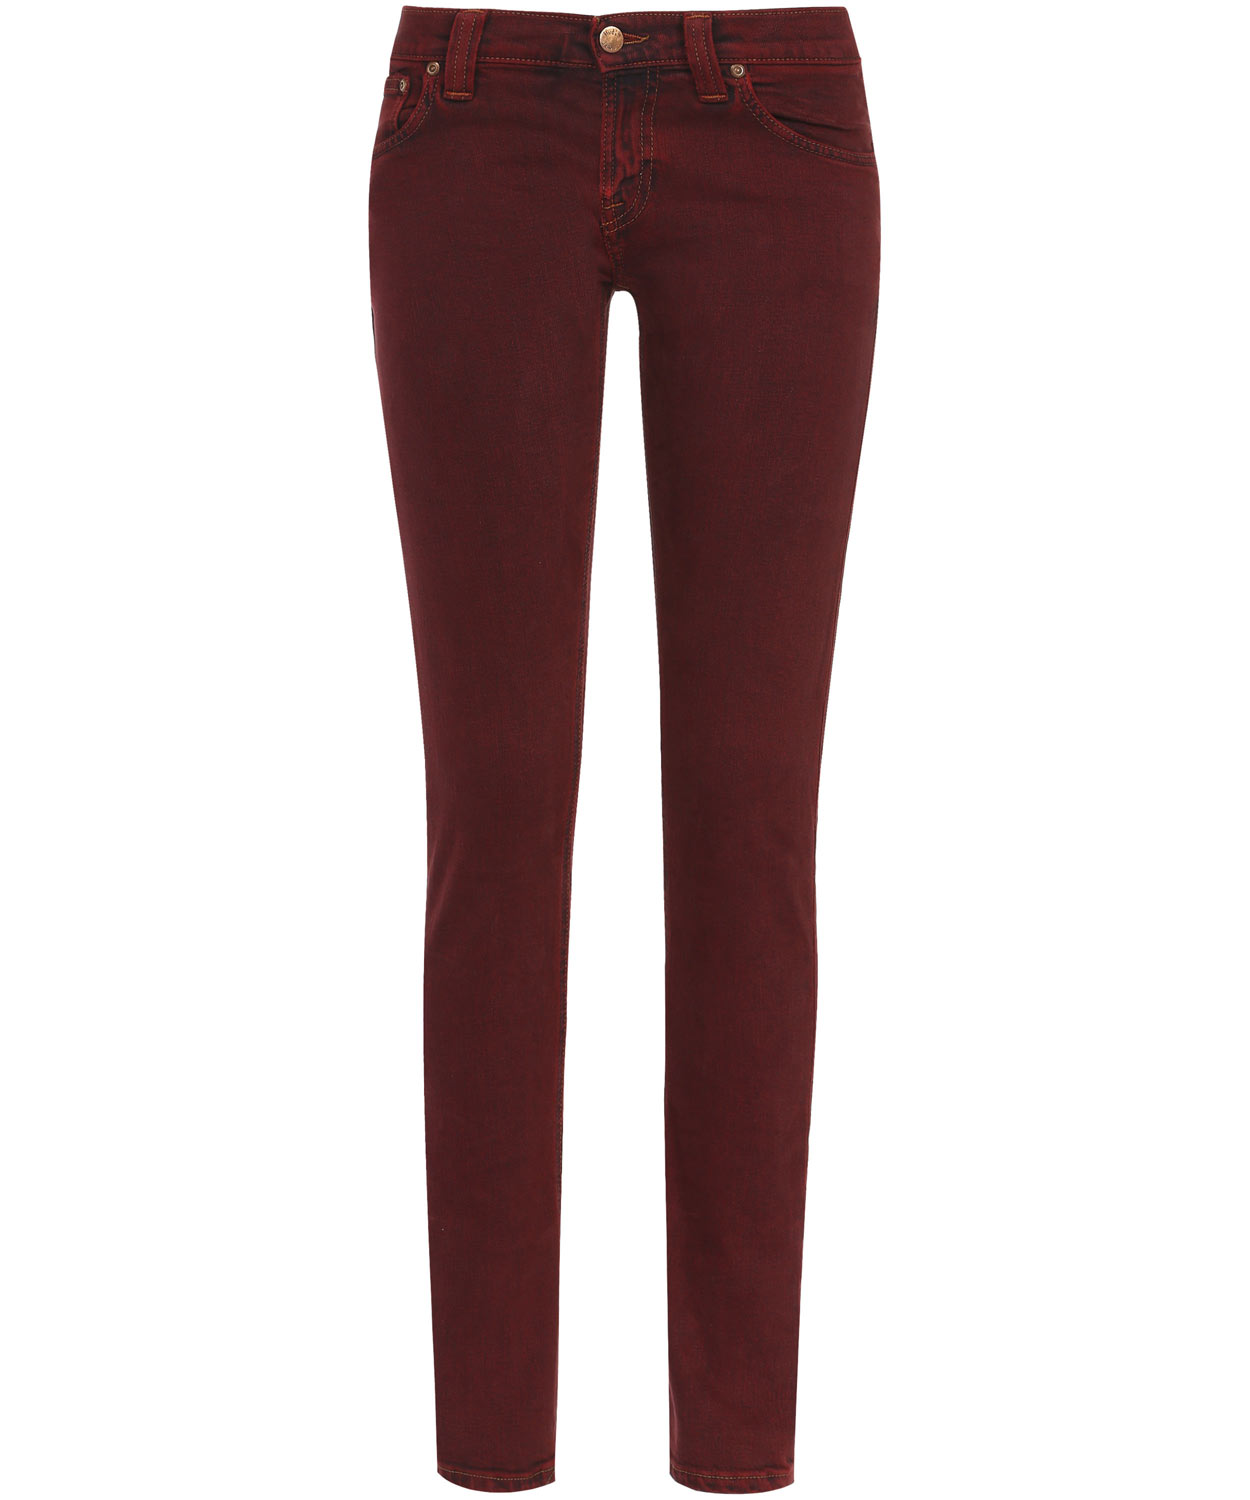 Lyst - Nudie Jeans Burgundy Long John Skinny Jeans in Red